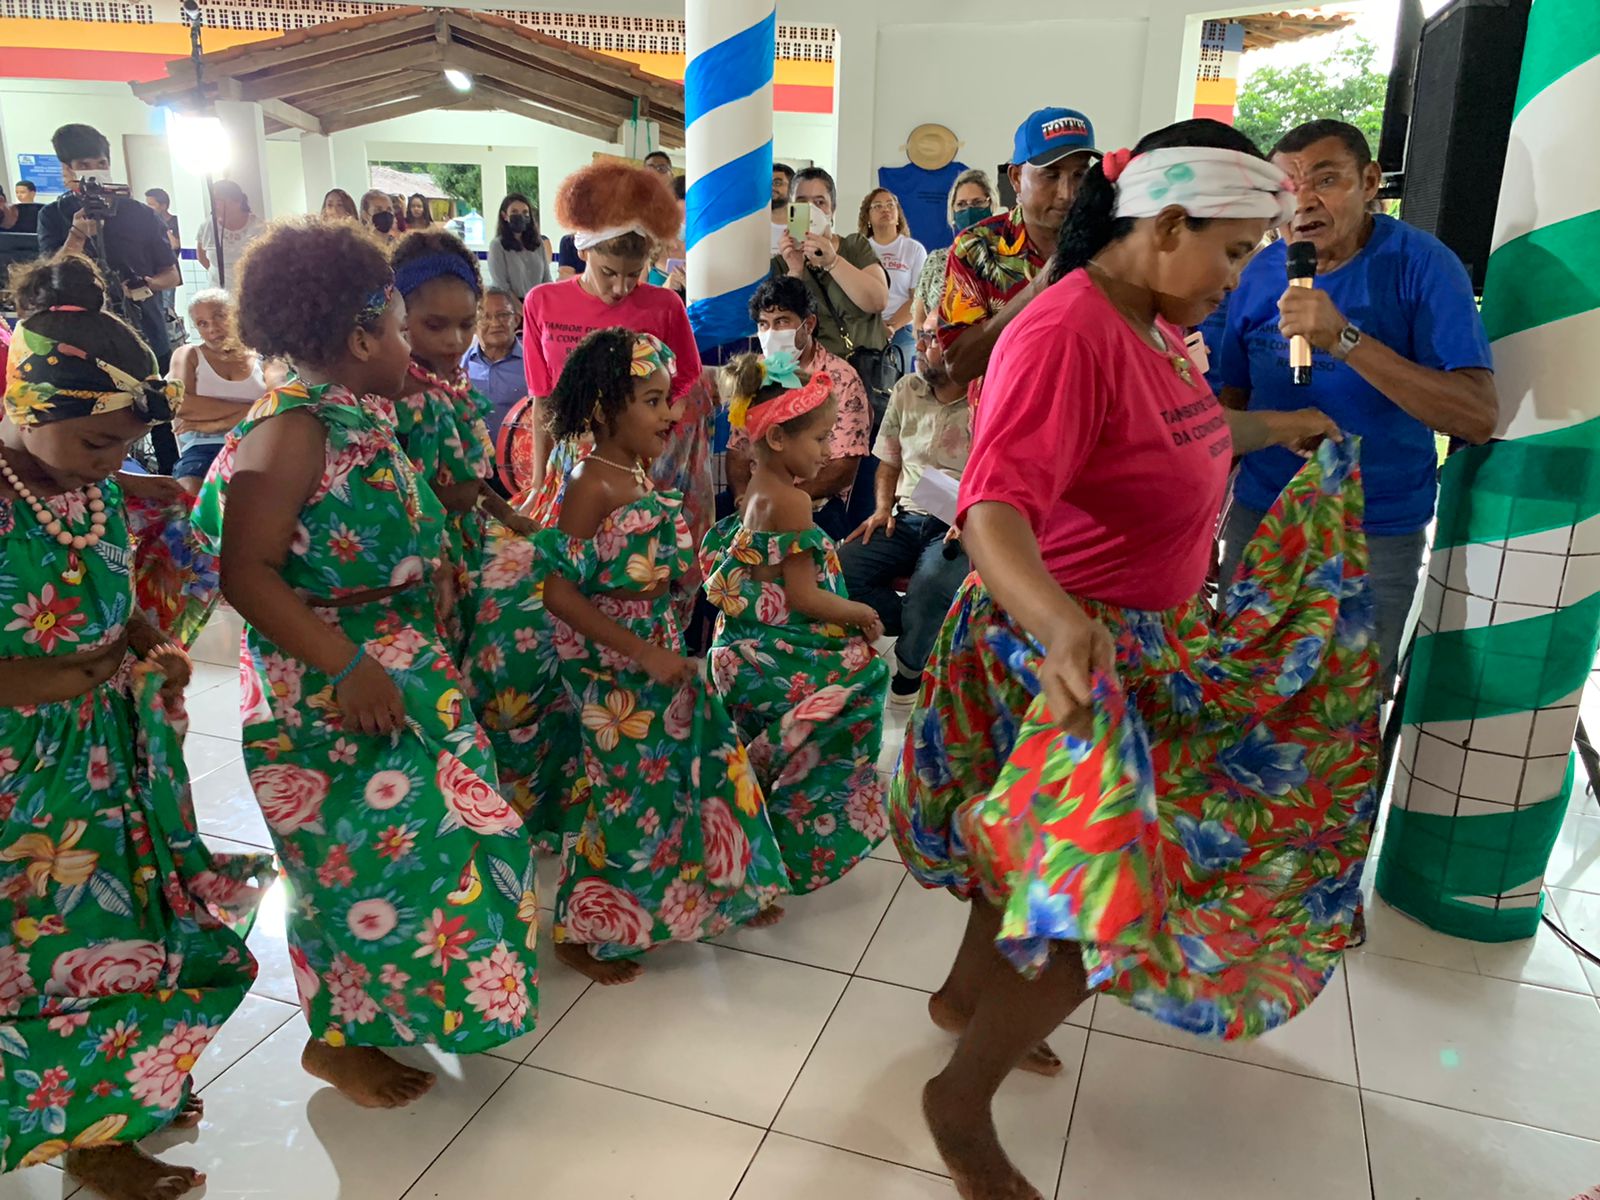 Conjunto de pessoas reunidas em evento que valoriza cultura quilombola. Na foto, mulheres e crianças dançam e usam vestidos verdes floridos e adereços na cabeça. Ao fundo pessoas fotografam.